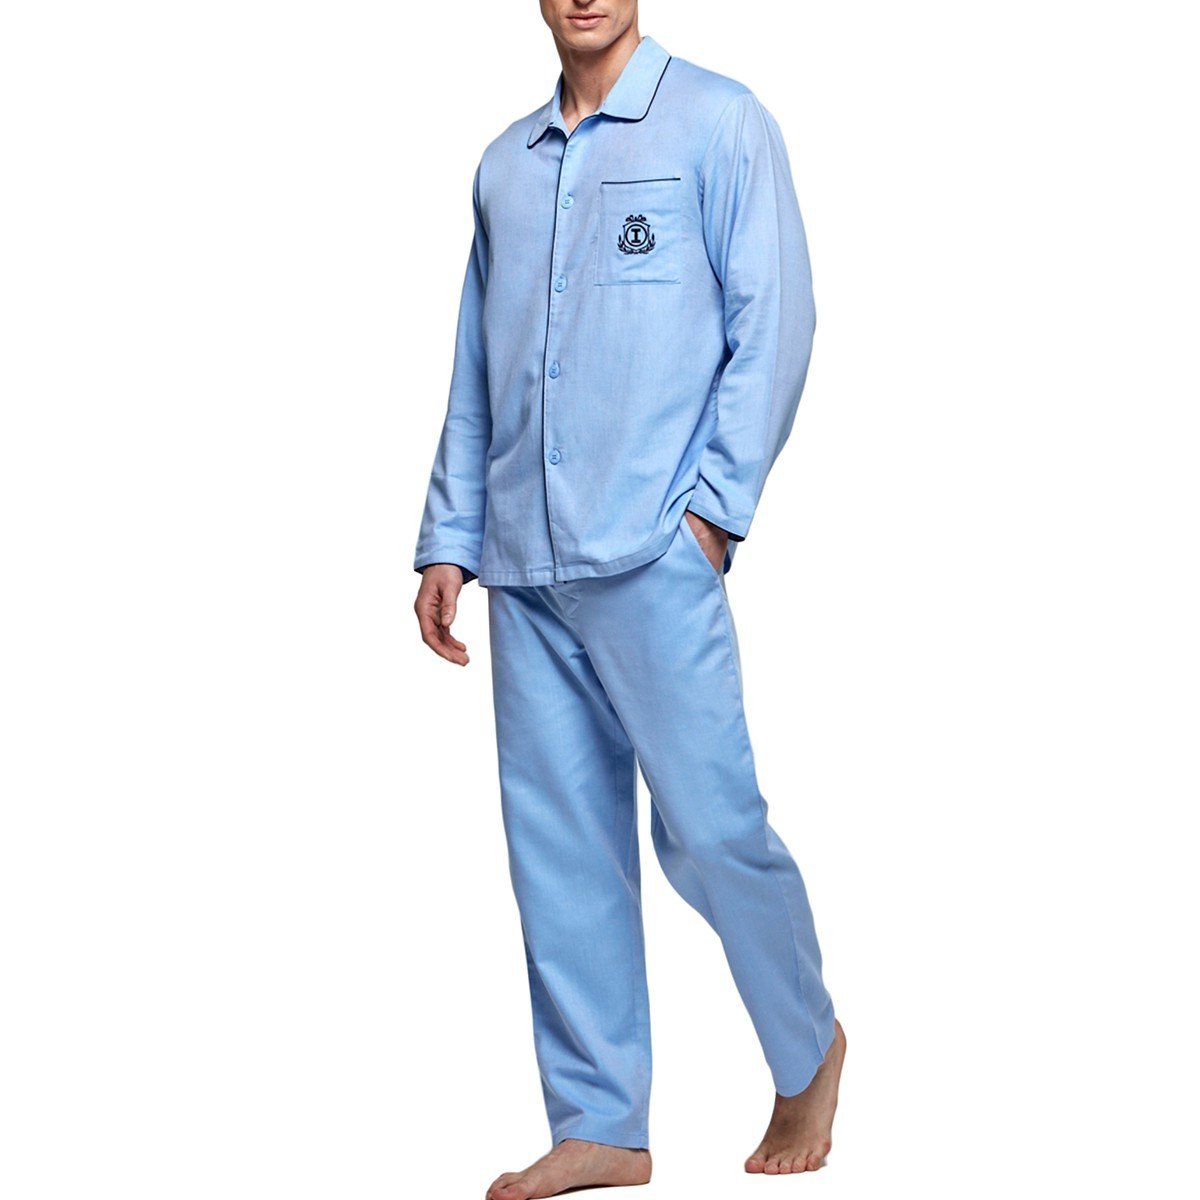 Pyjama long en coton pour homme Bonaire bleu par Impetus